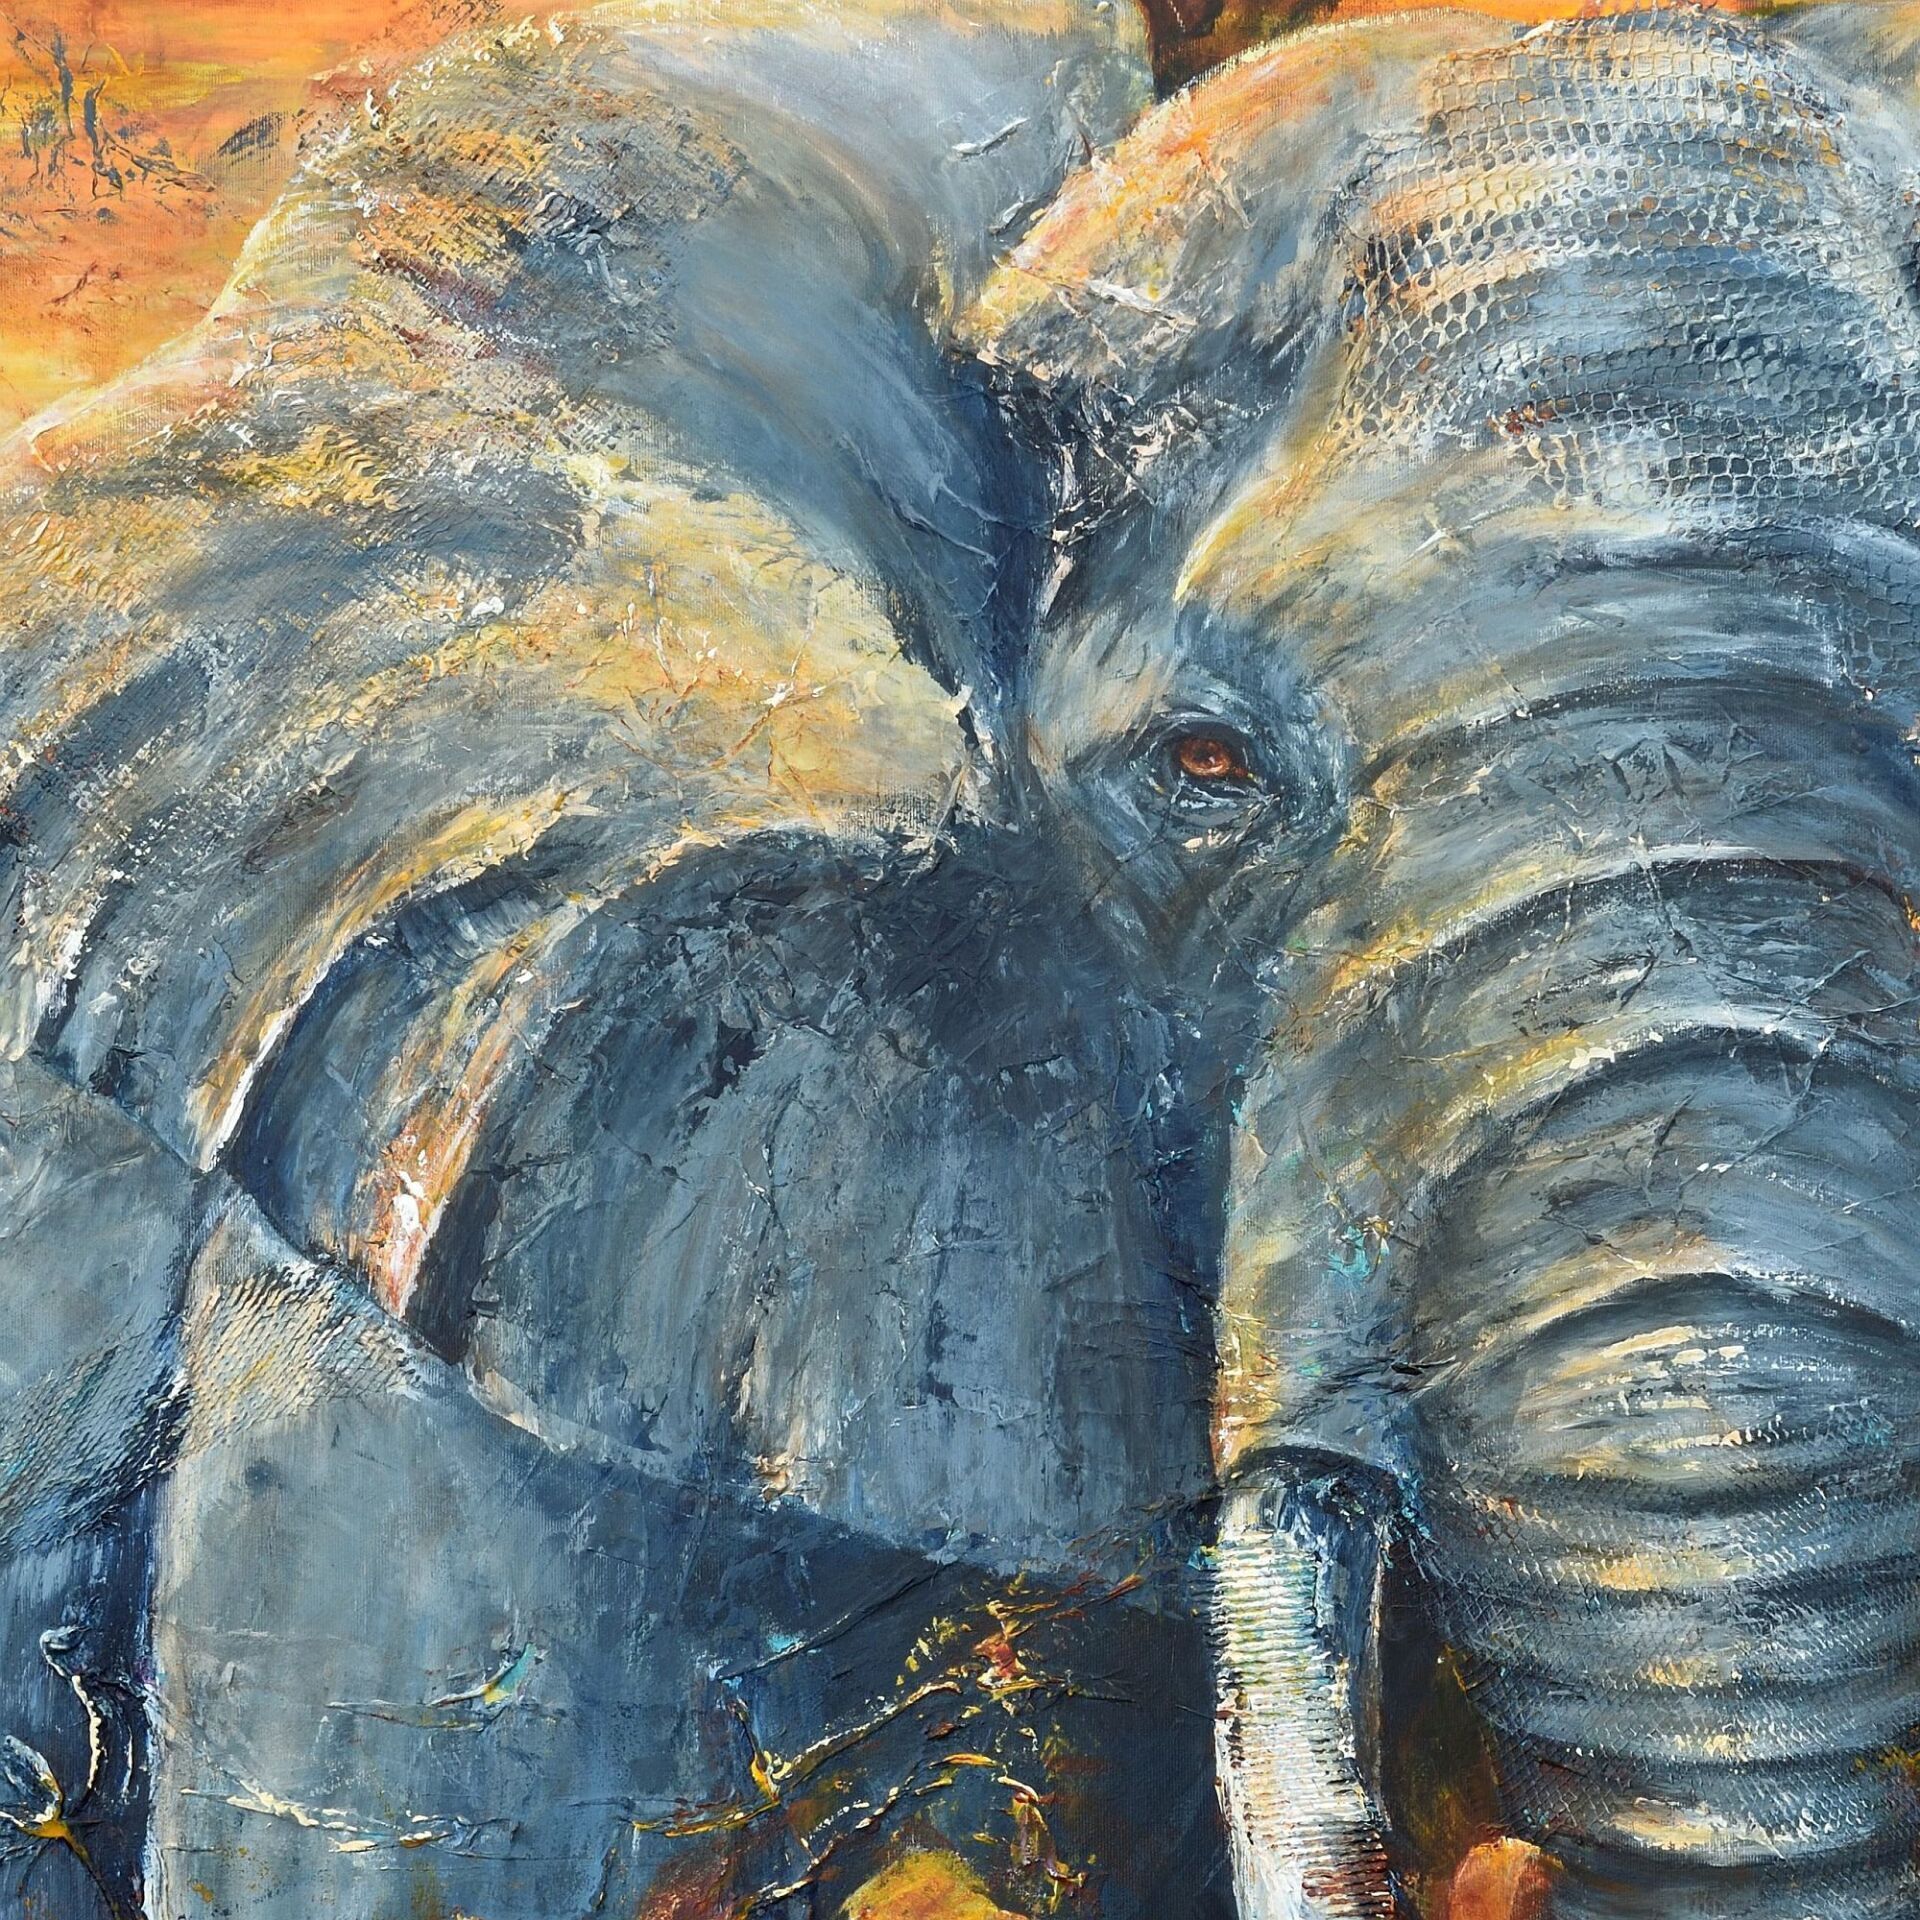 Ausschnitt aus Elfantengemaelde: Elefantenauge, Elefantenohr, Stoßzahn und Teil vom Rüssel. In den Farben blaugrau und orangegelb